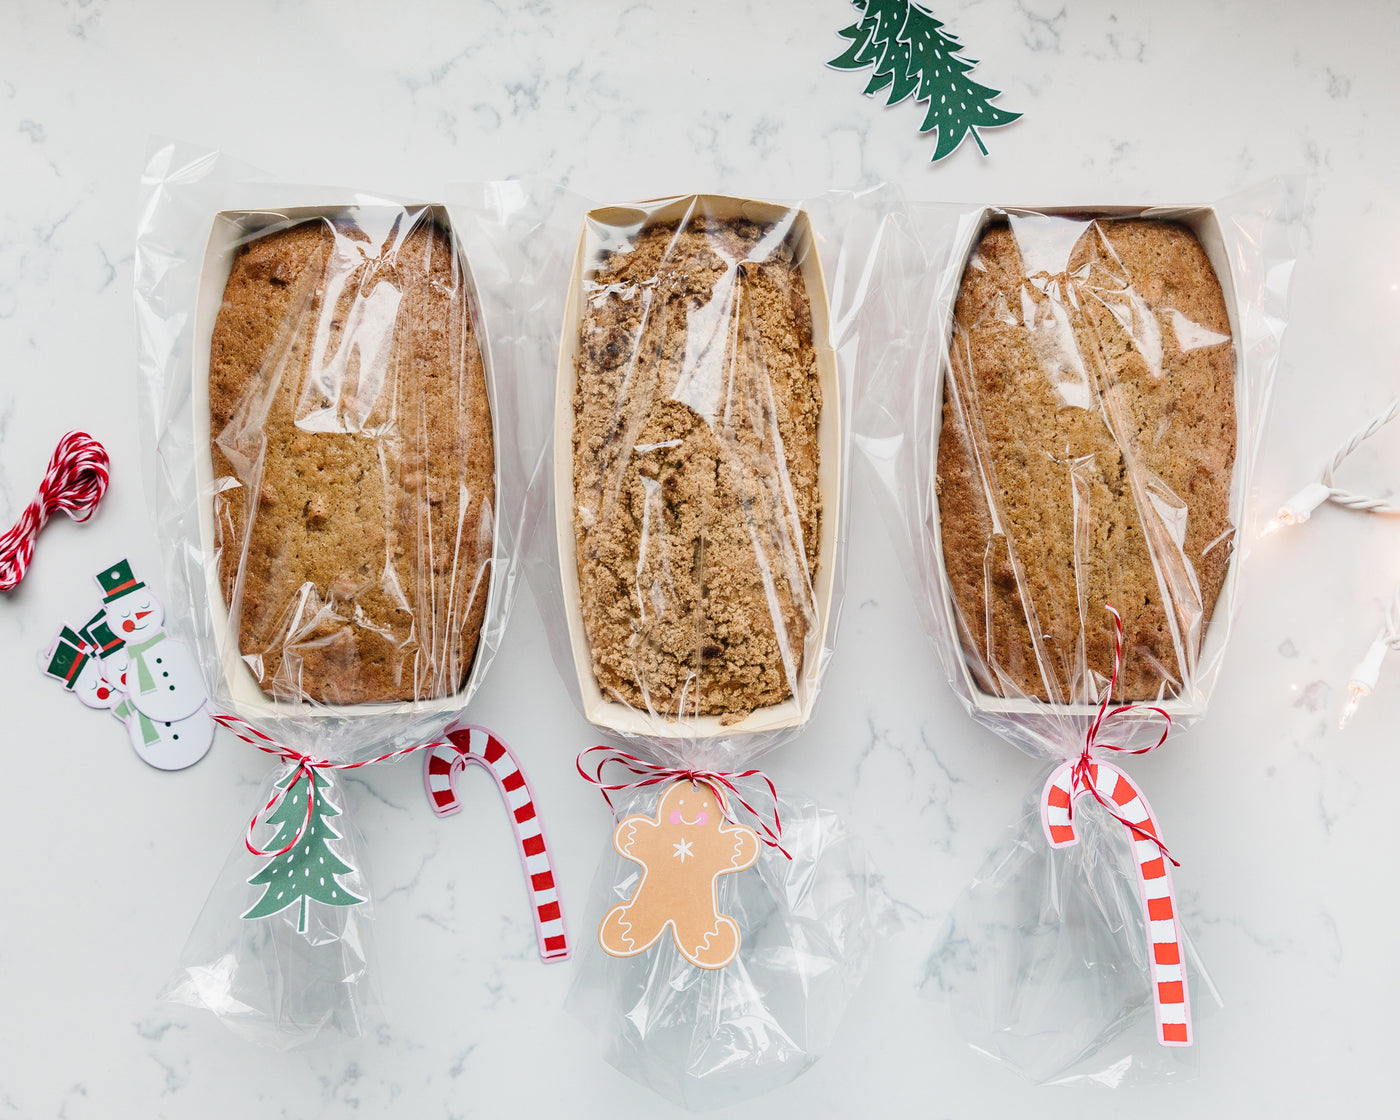 PLFC230 - Christmas Plaid Loaf Pan Set